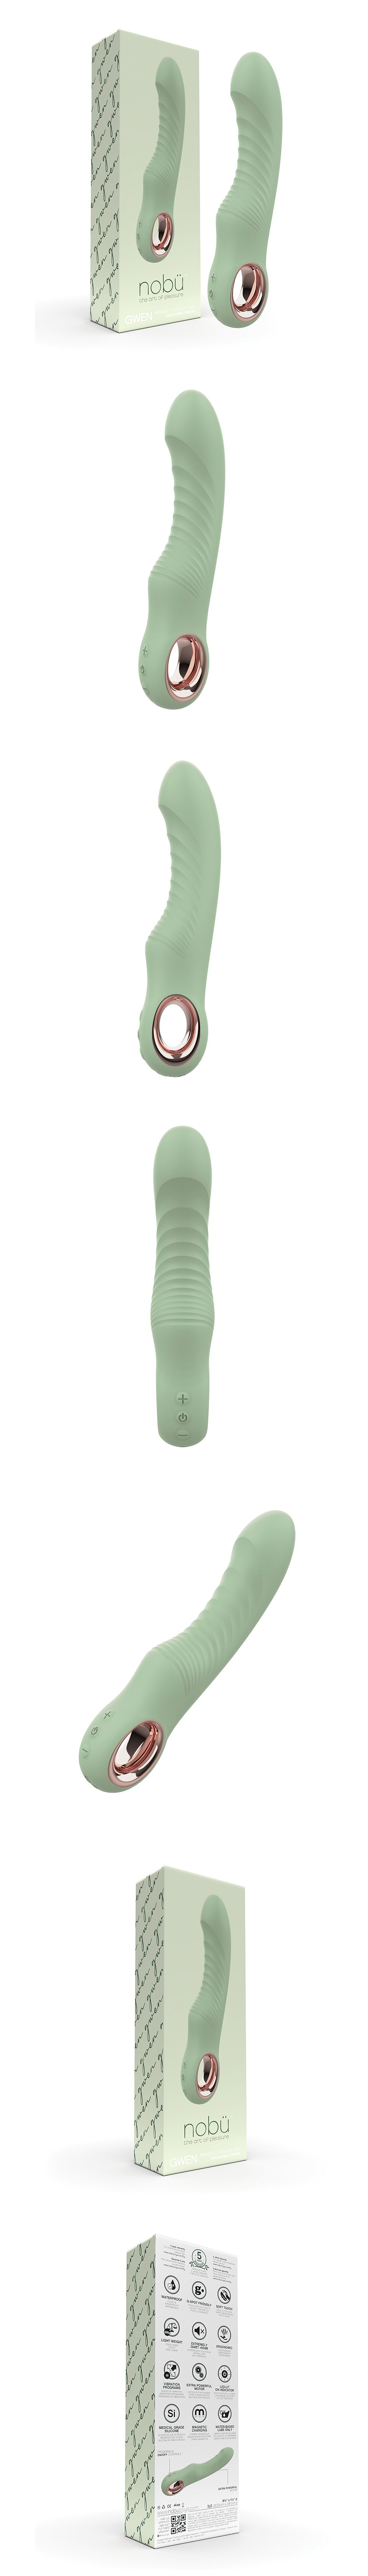 Nobu Gwen G-Spot Vibrator w/Removable Green Bullet Vibrator